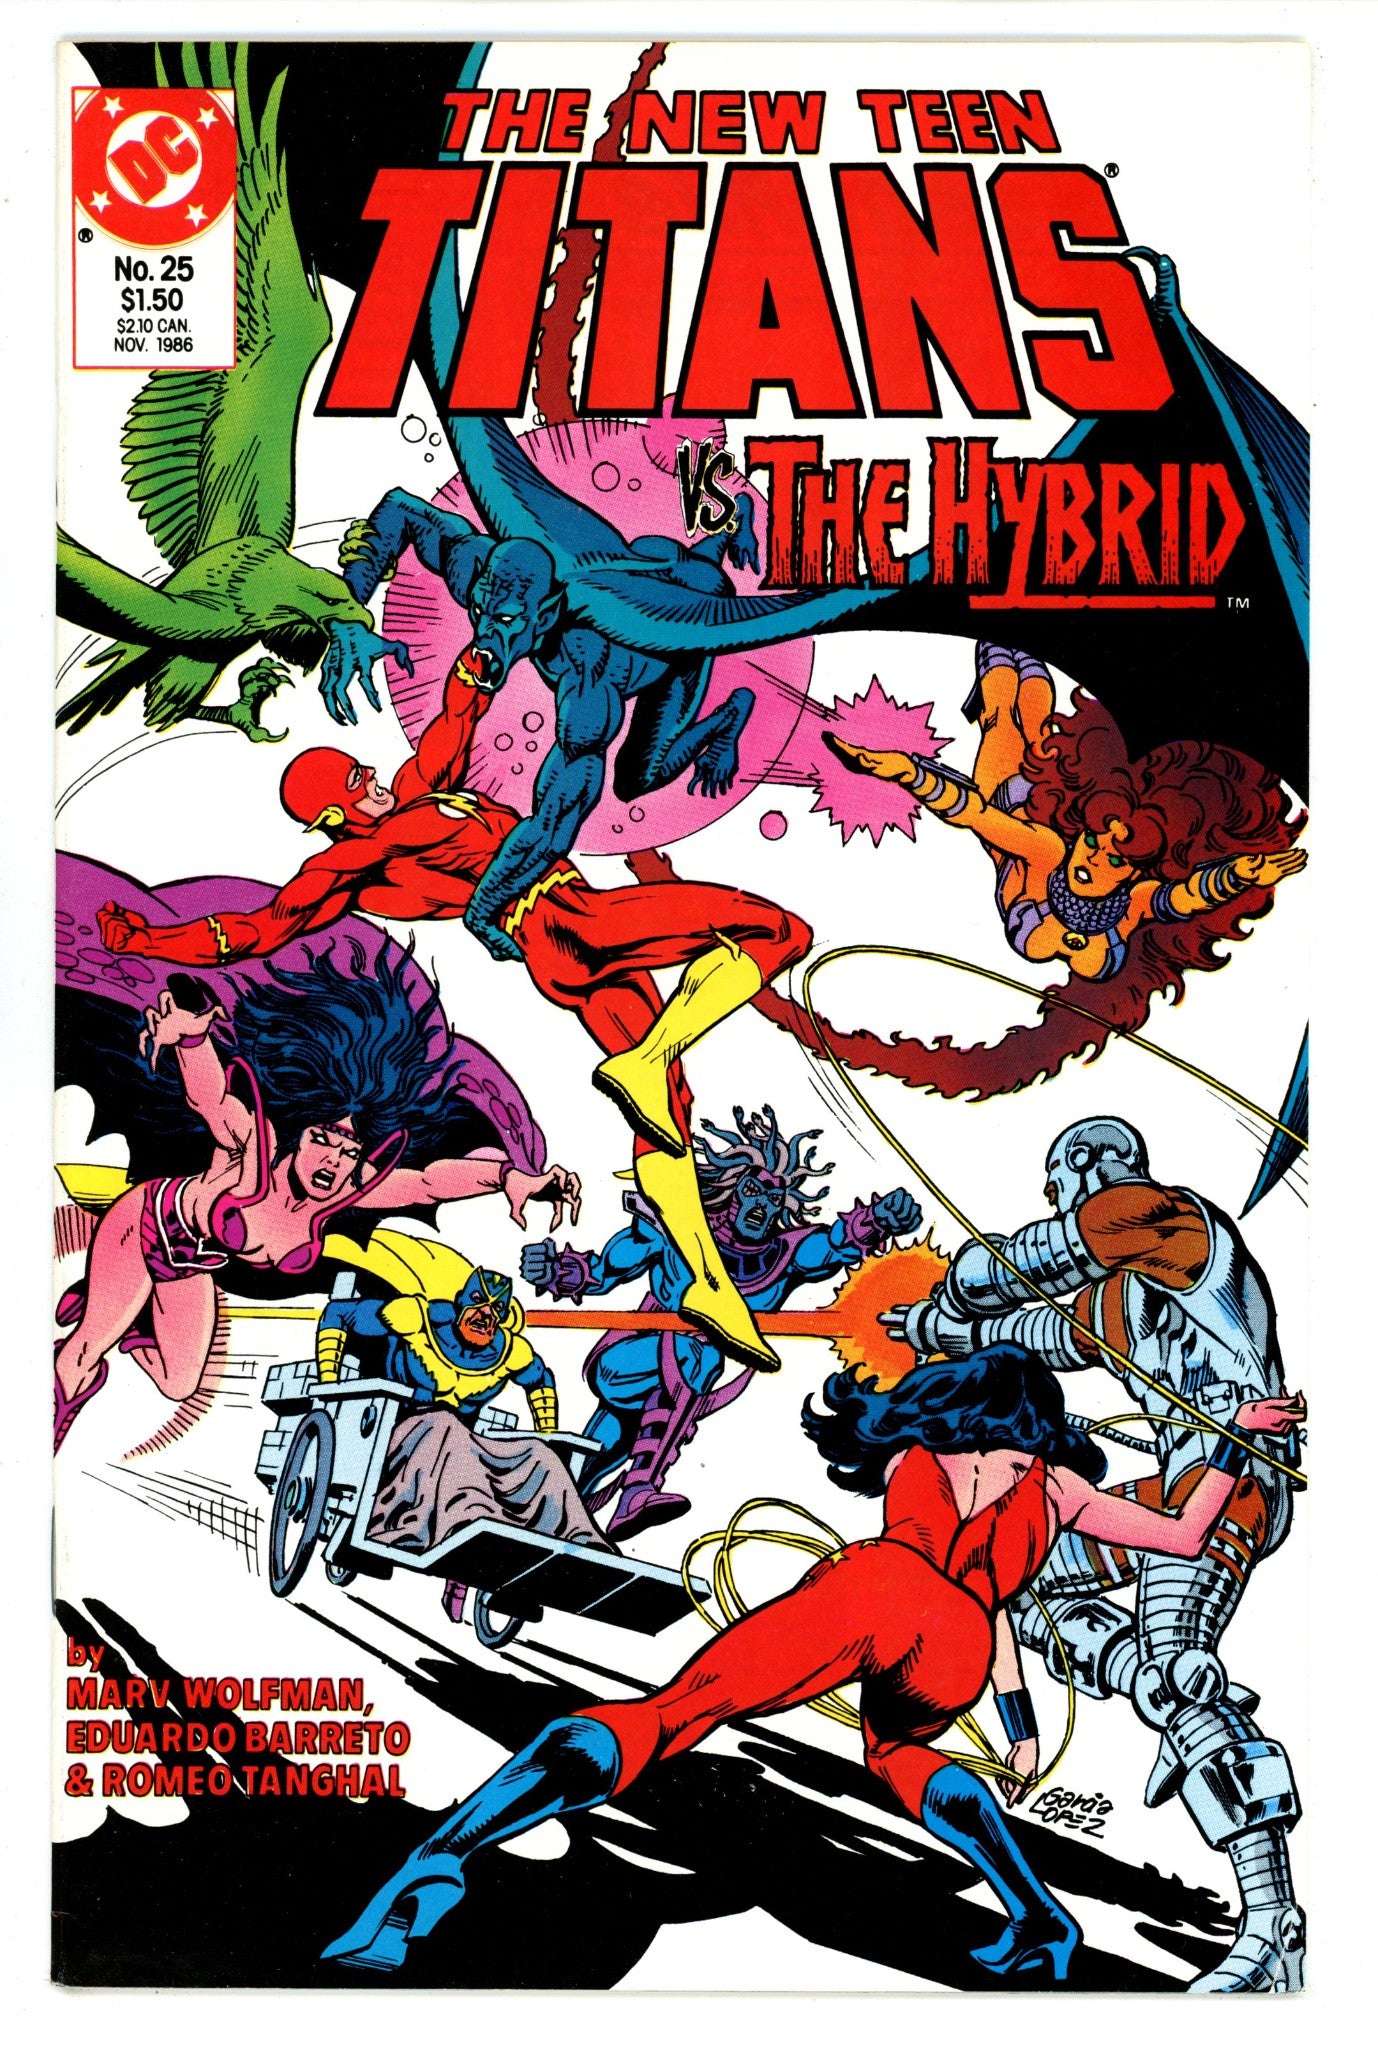 The New Teen Titans Vol 2 25 High Grade (1986) 